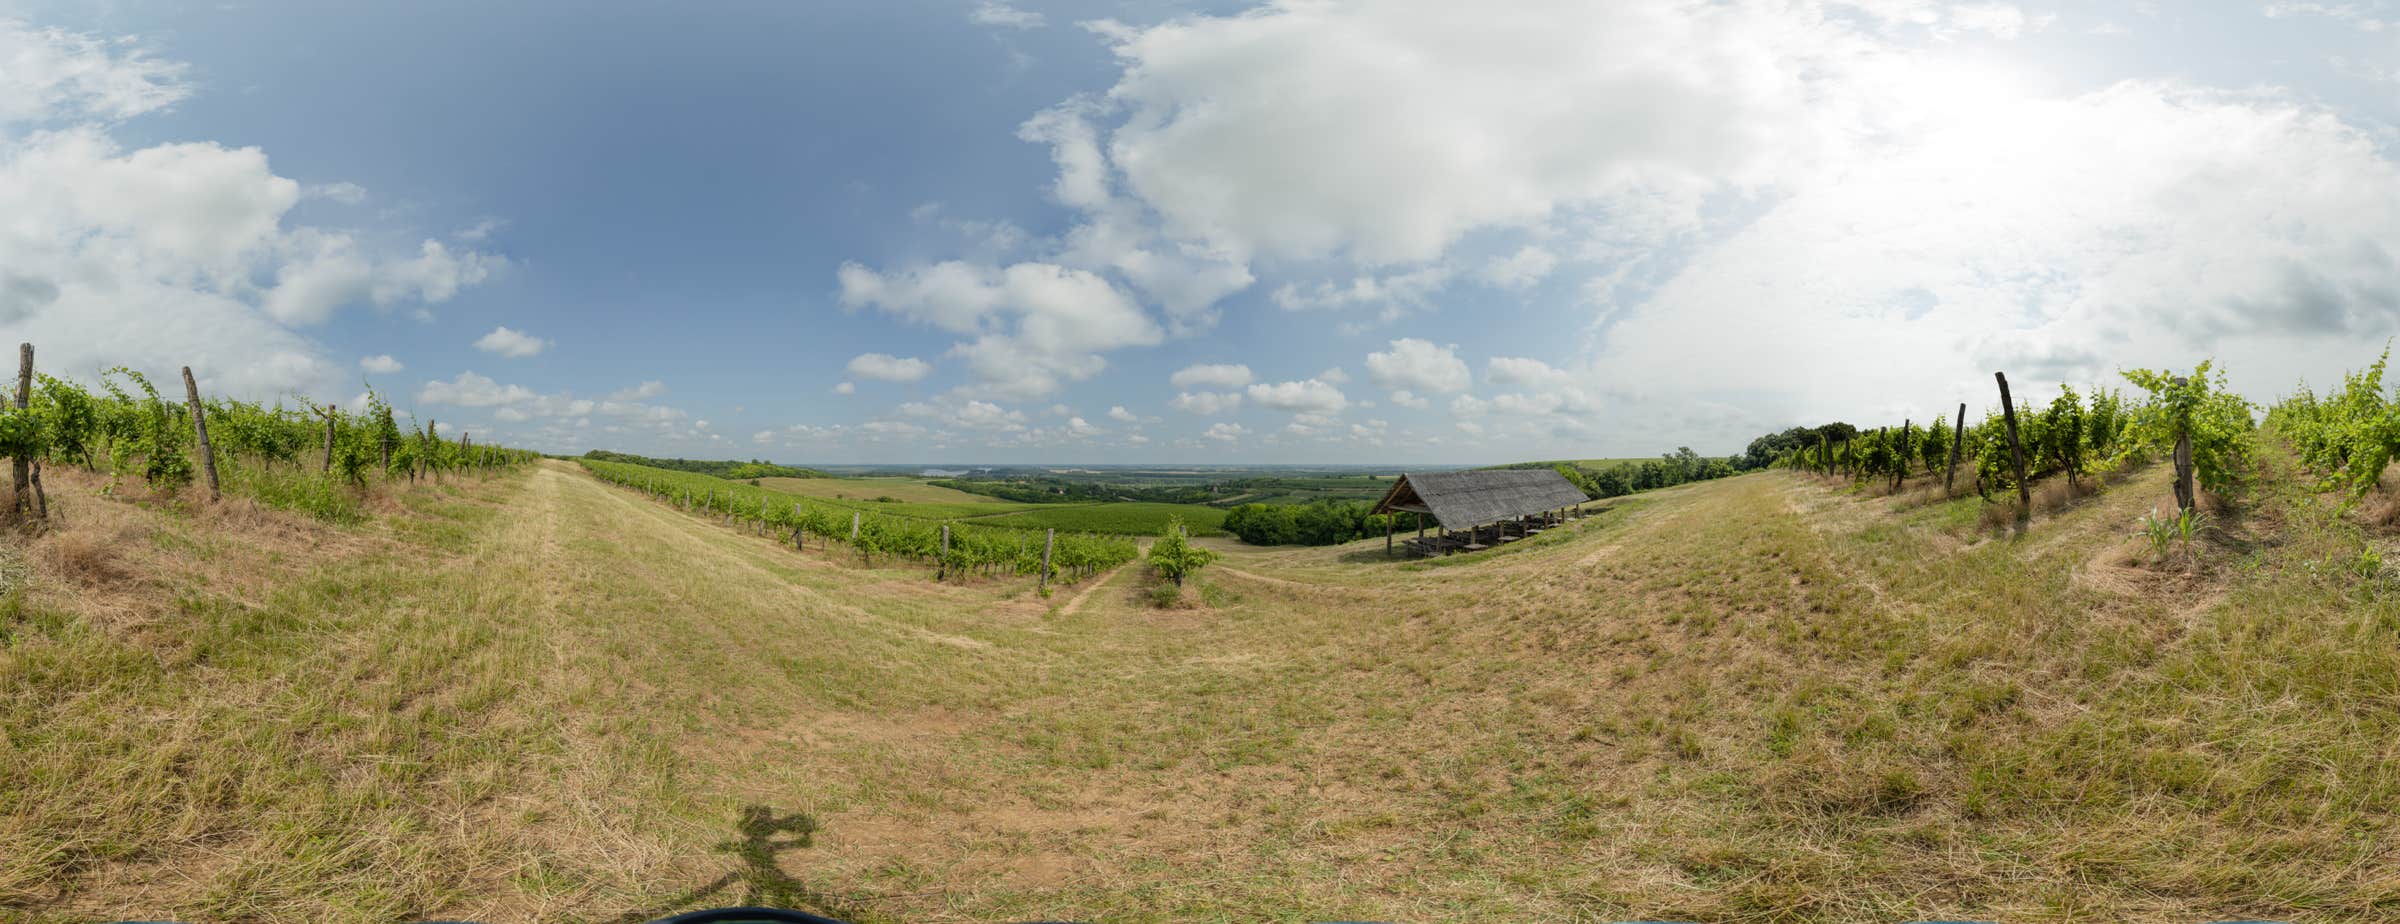 Das 360°-Panoramabild zeigt den Weinberg mit mehreren Reihen von Weinstöcken und einem überdachten Sitzbereich. Das Bild ist mit der Panoramatour verlinkt.